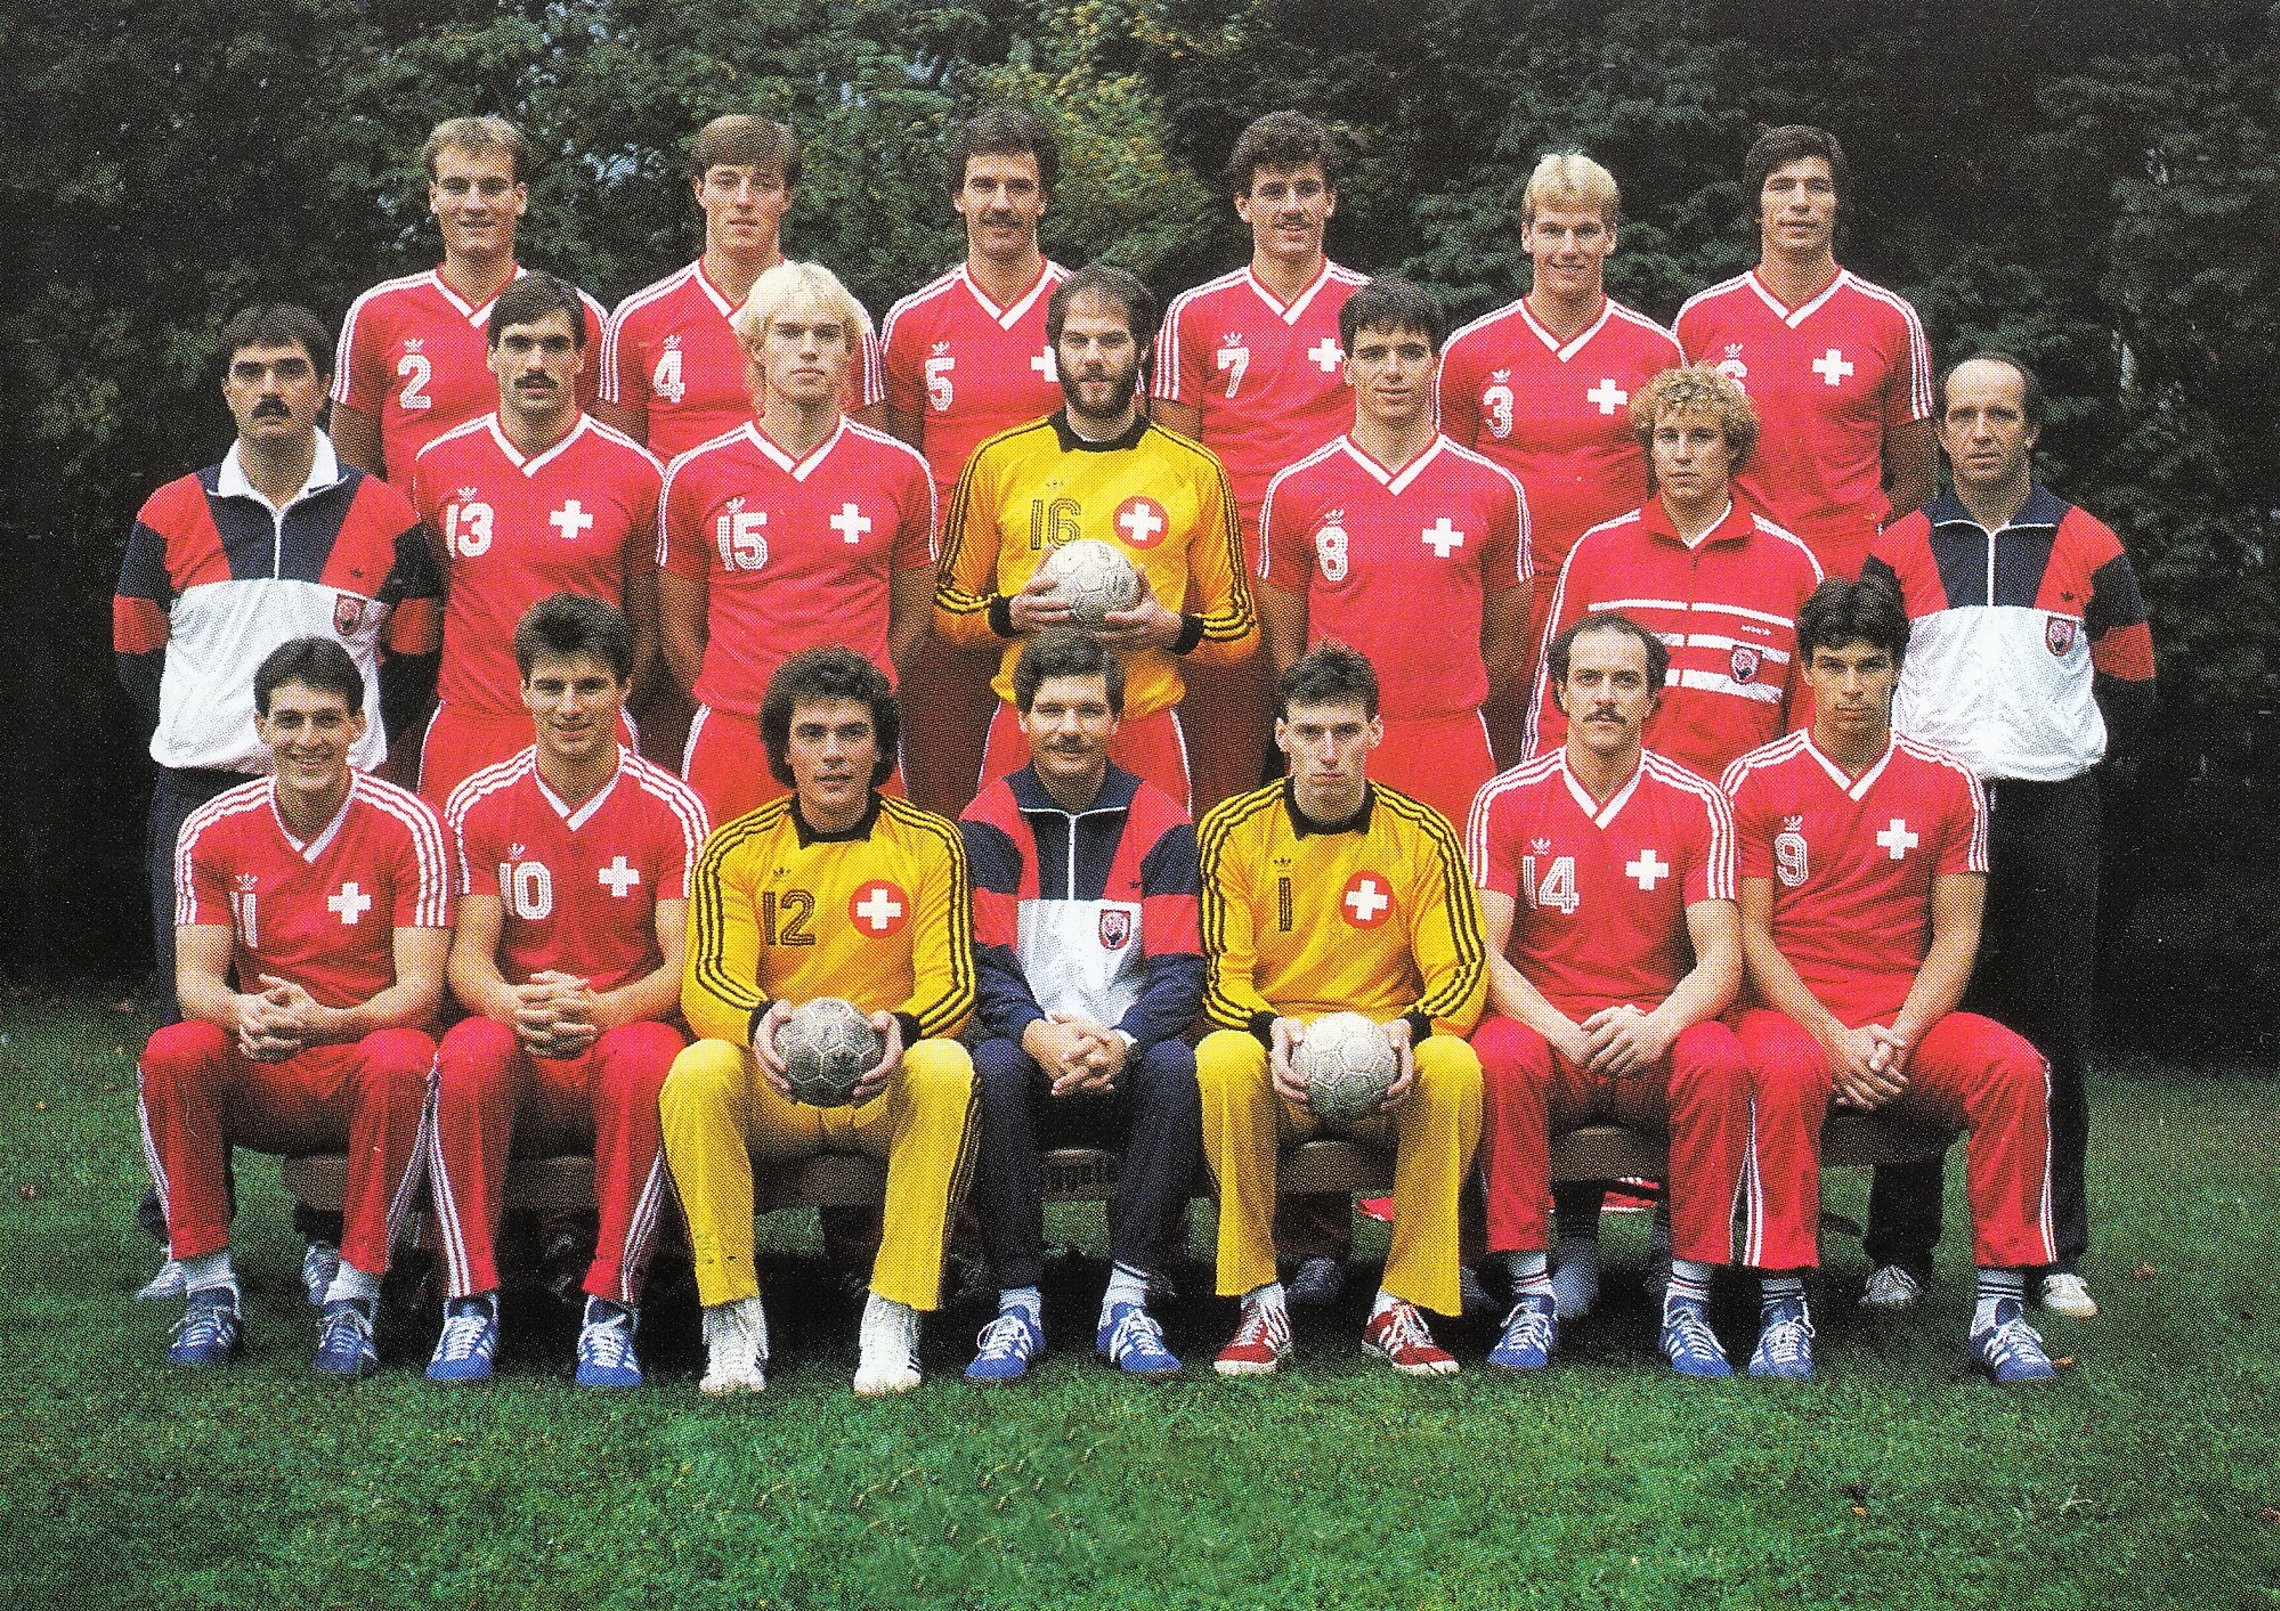 1986-6 Teamfoto Männer Nati.jpg